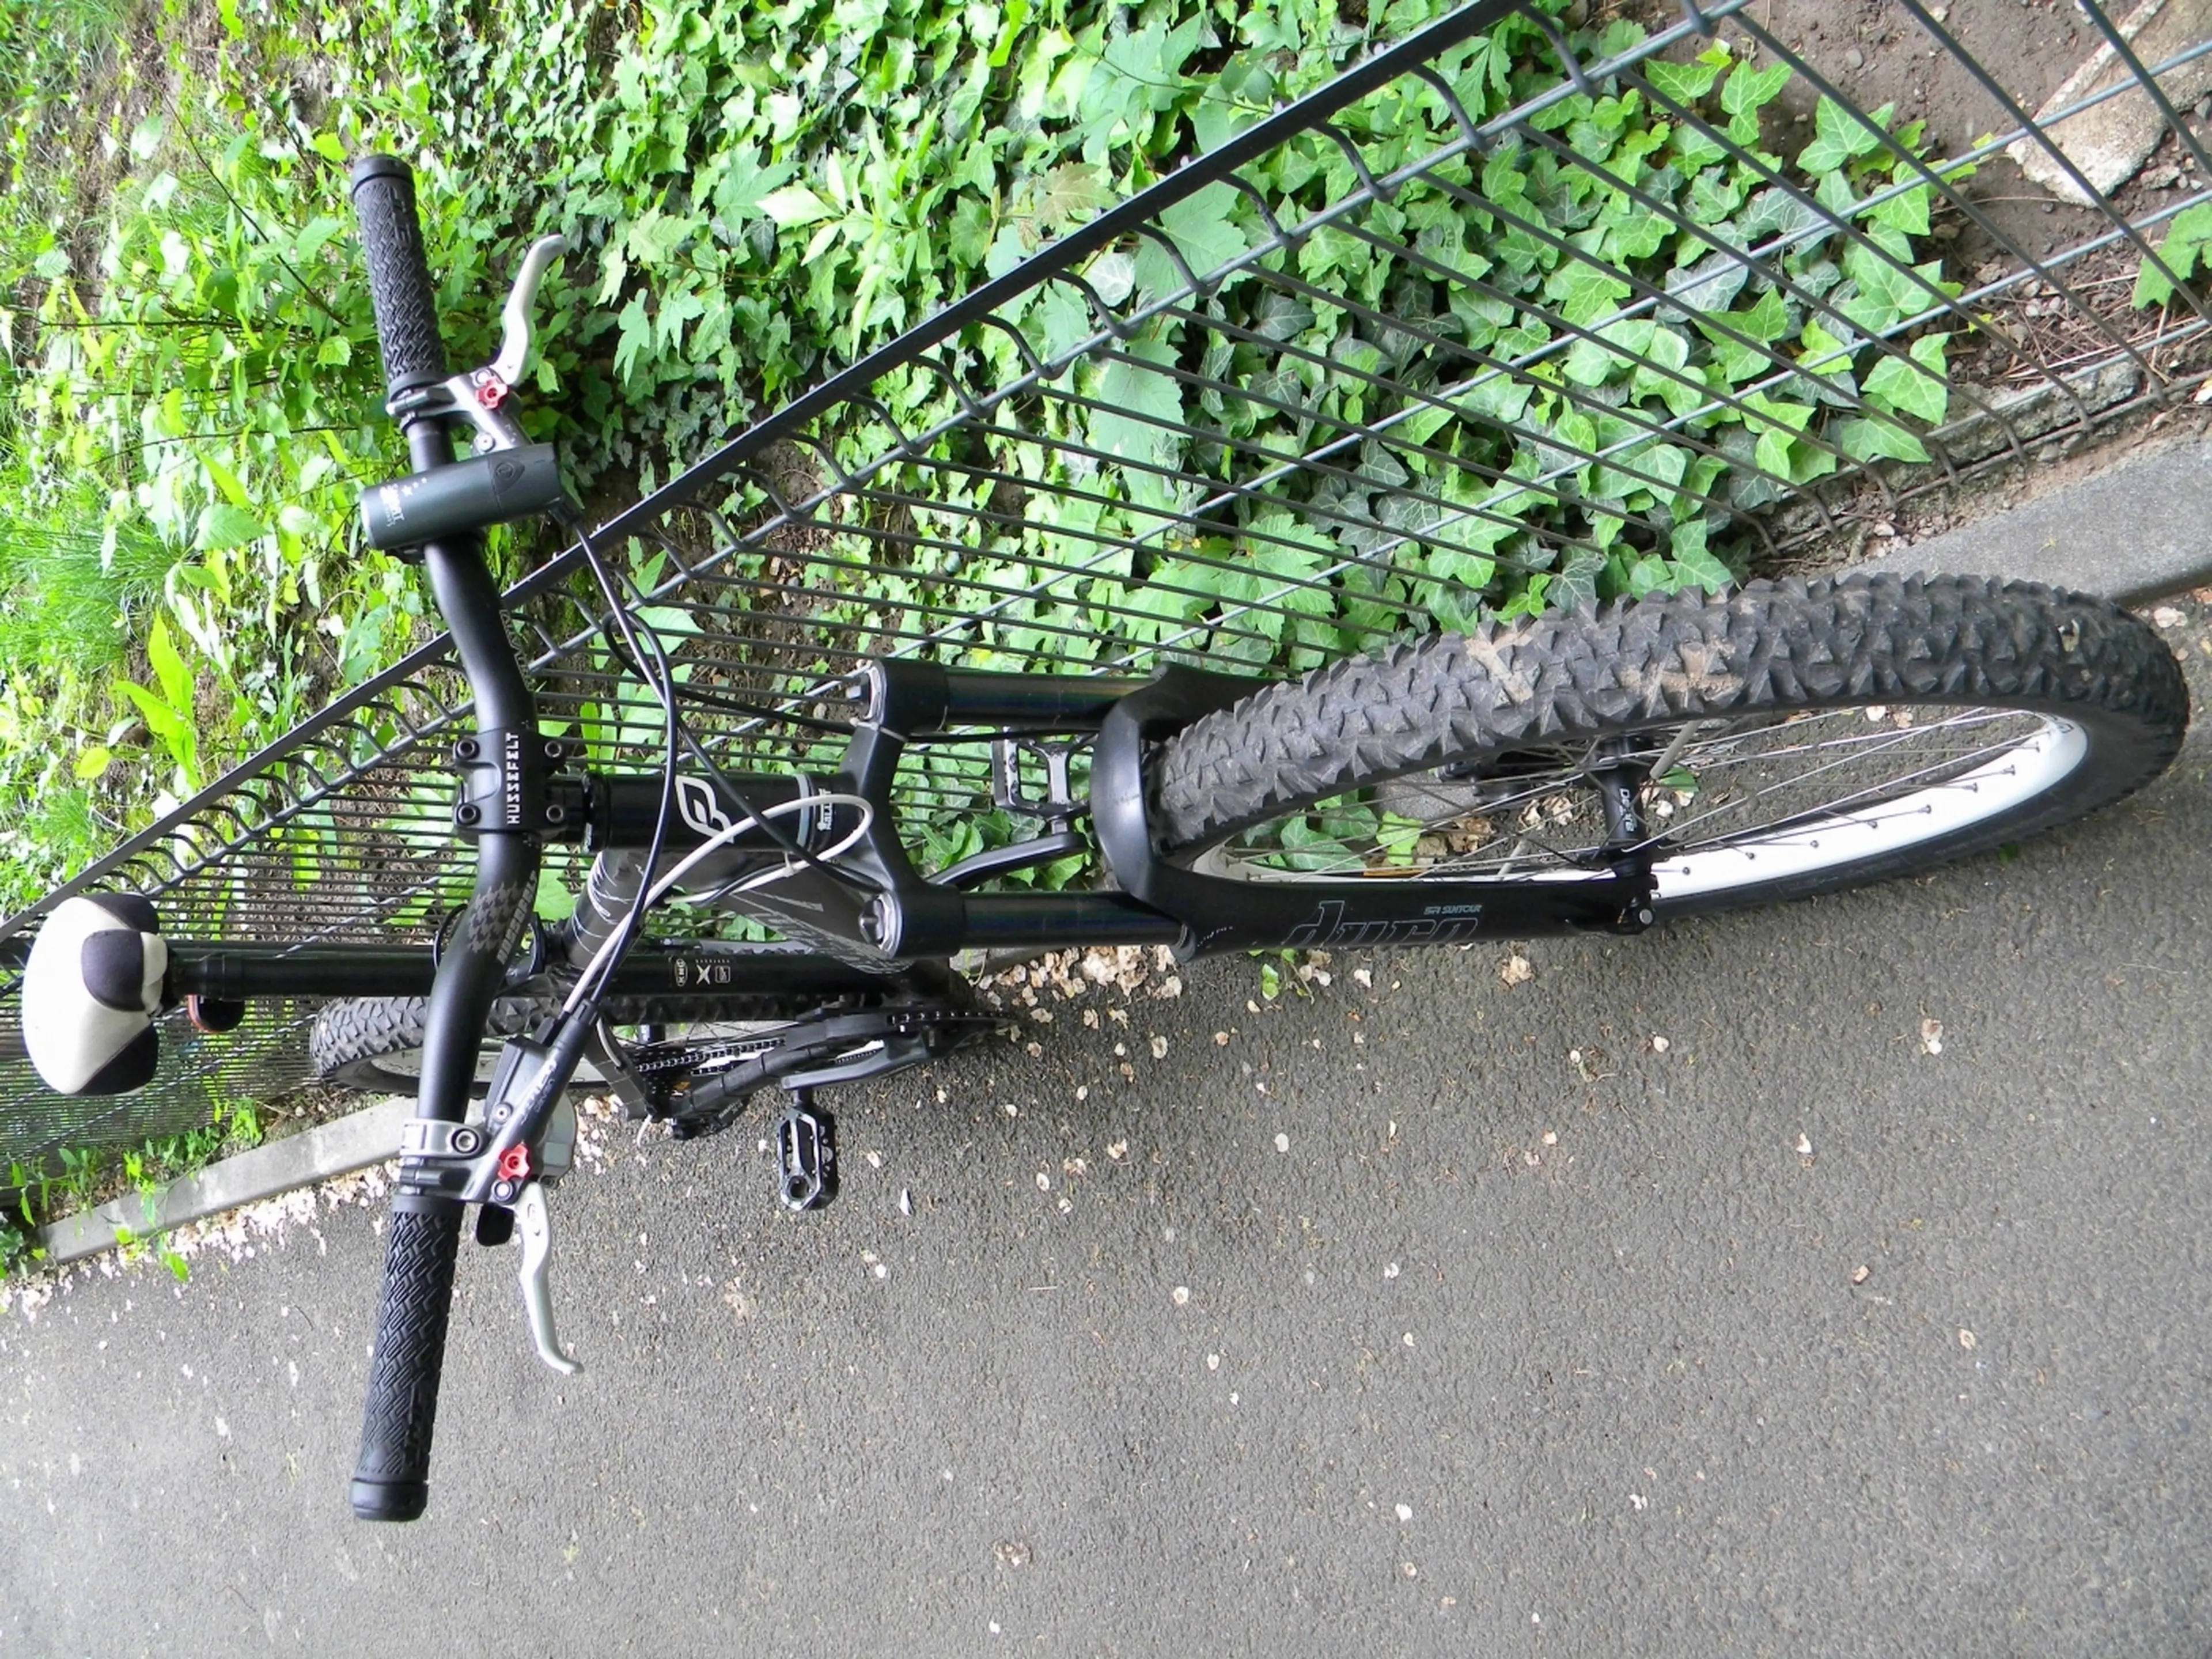 2. Bicicleta Poison Taxin